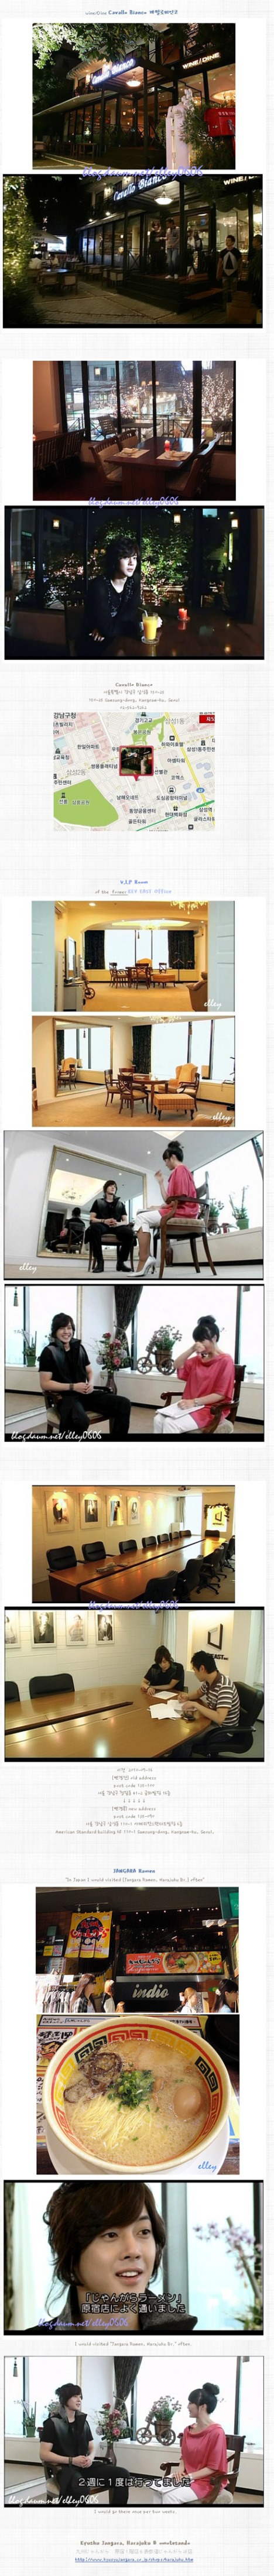 [27.07.10] [Pics] Lugares en los que estuvo Kim Hyun Joong durante la entrevista con DATV “Just the way you are” 20100728235239